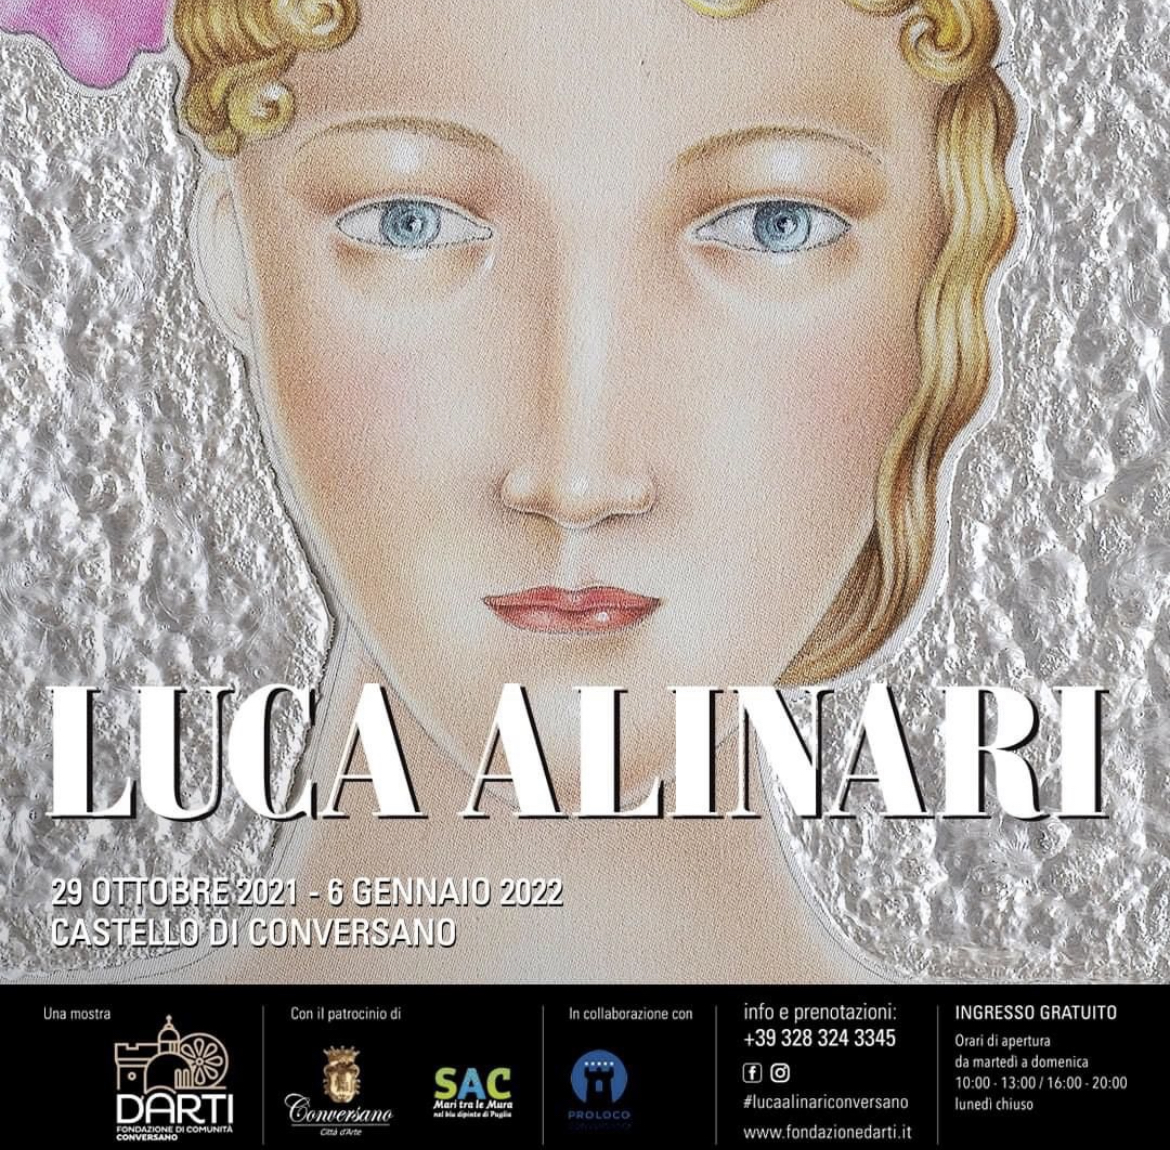 Luca Alinari – Nuove visioni dall’immaginario colorato